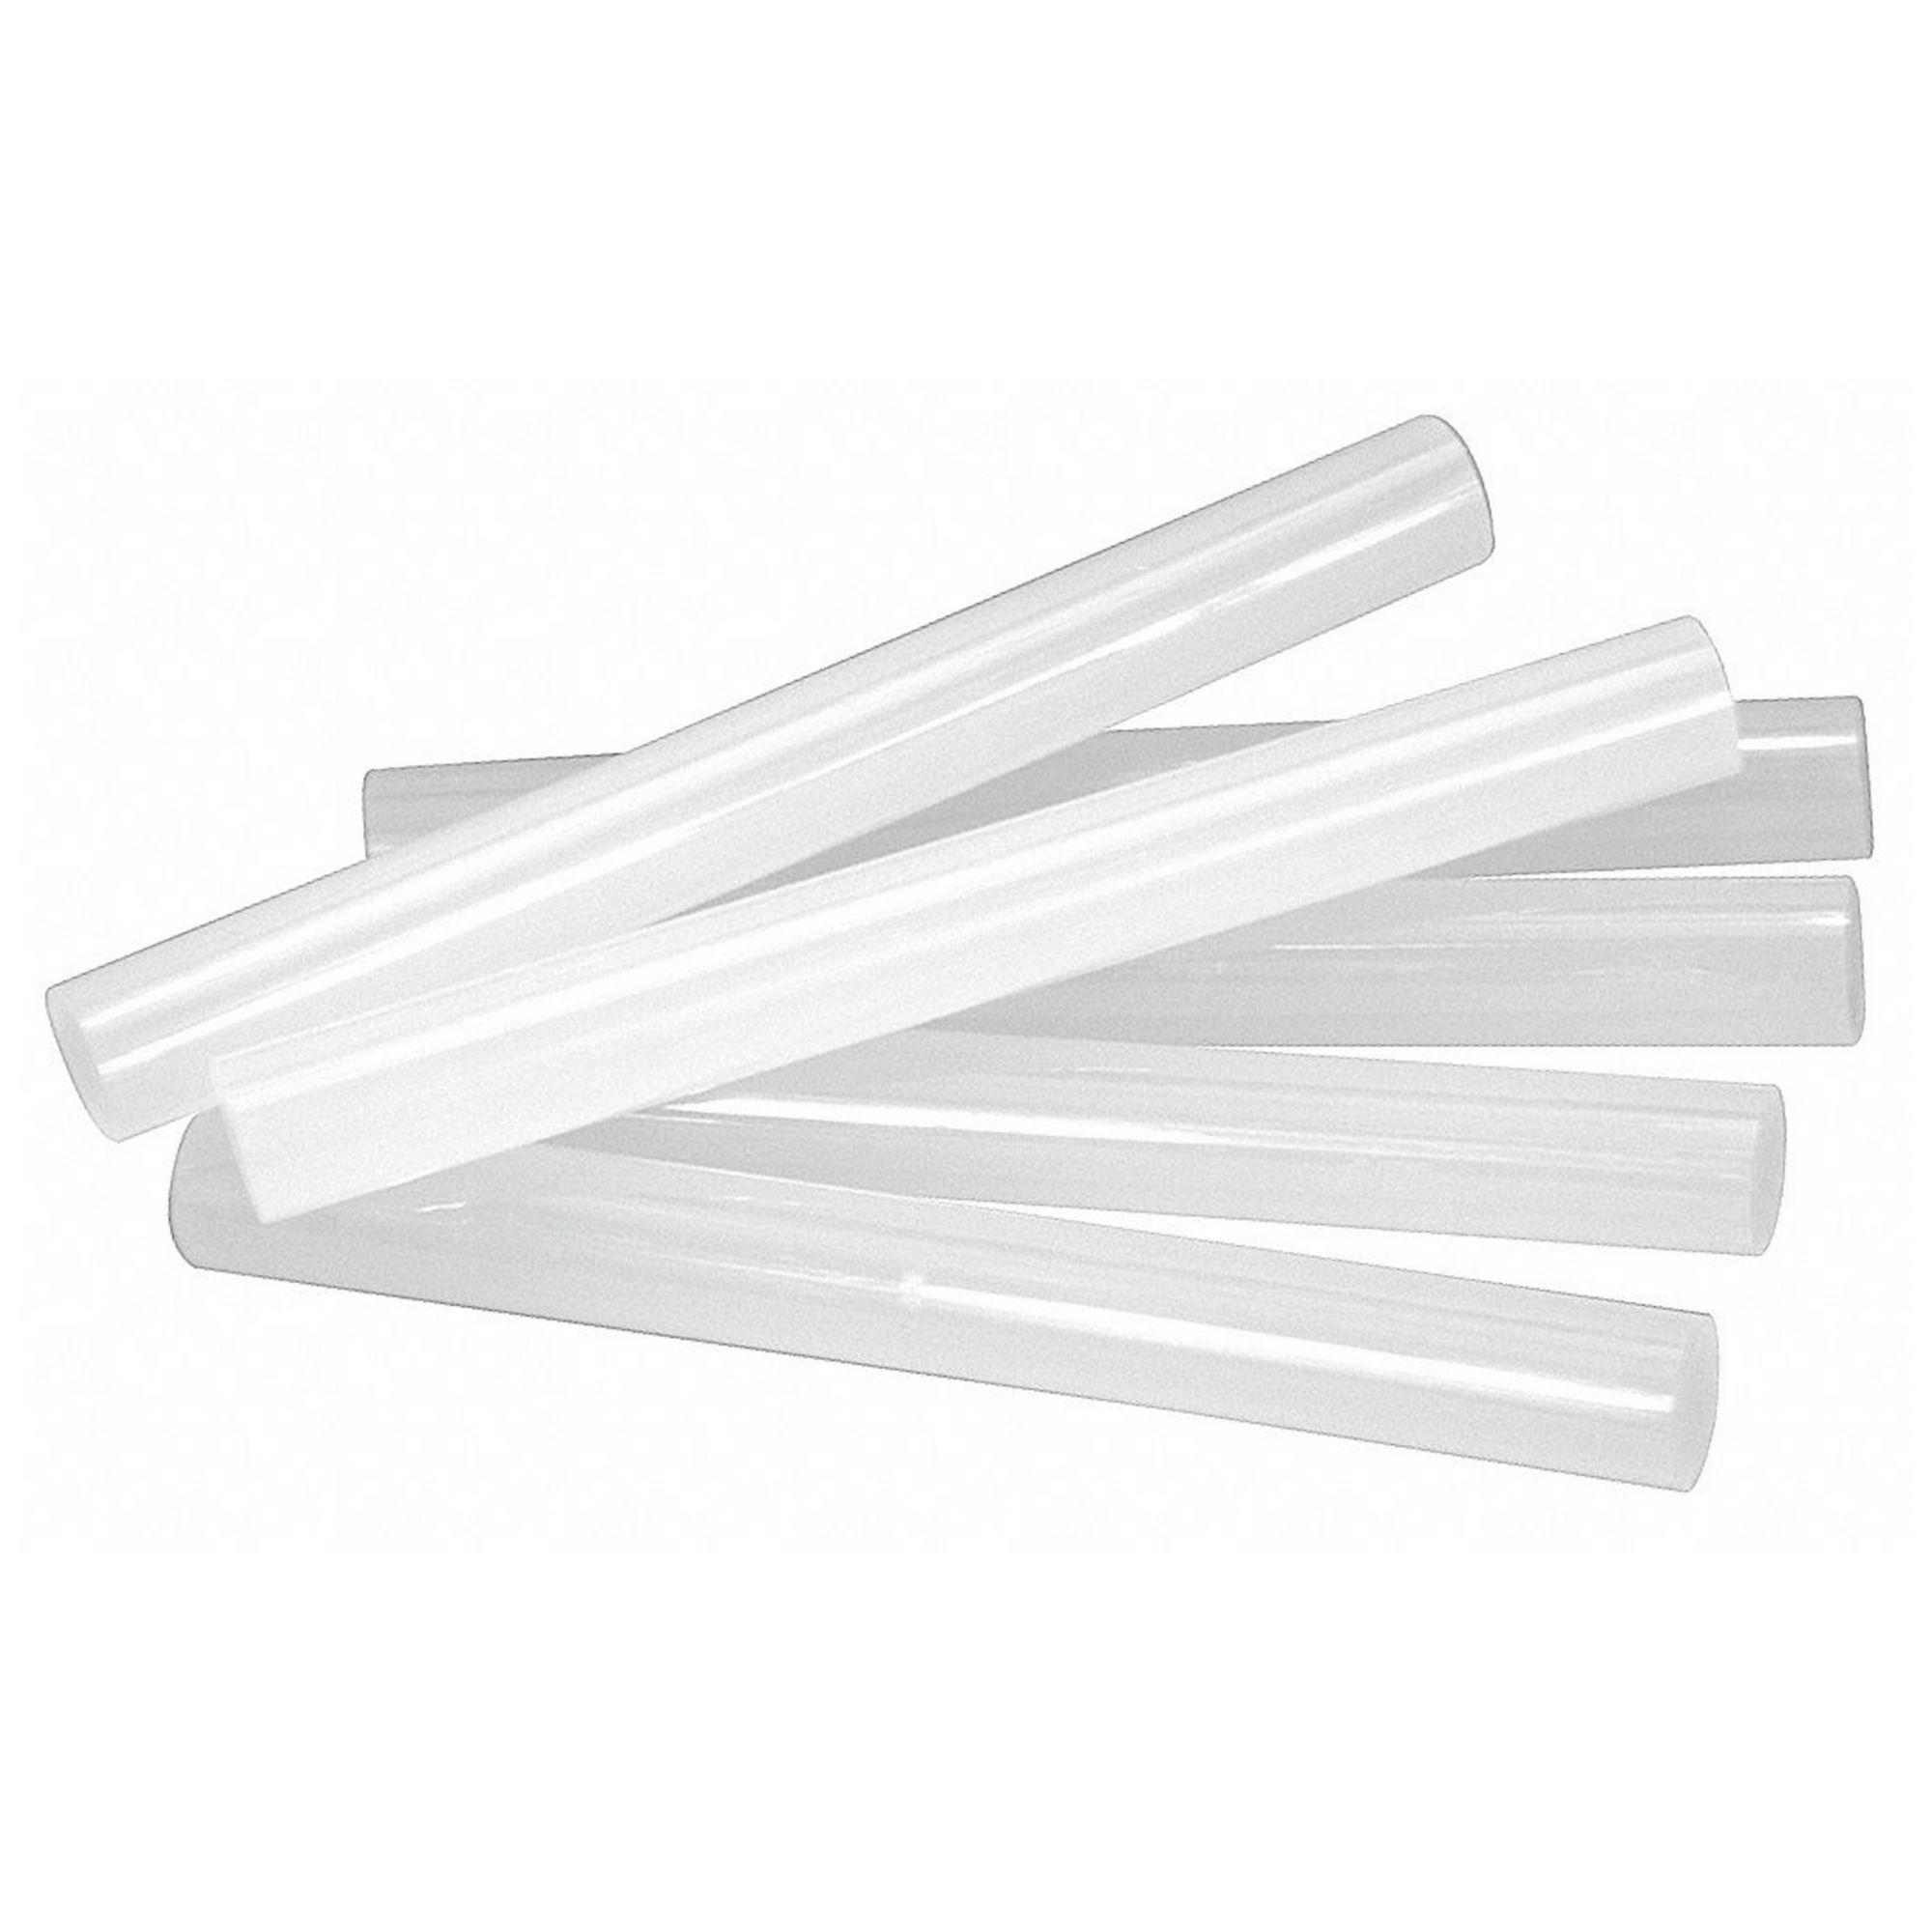 GF 15-12 Hot Melt Glue Sticks: 1/2 x 12 Long